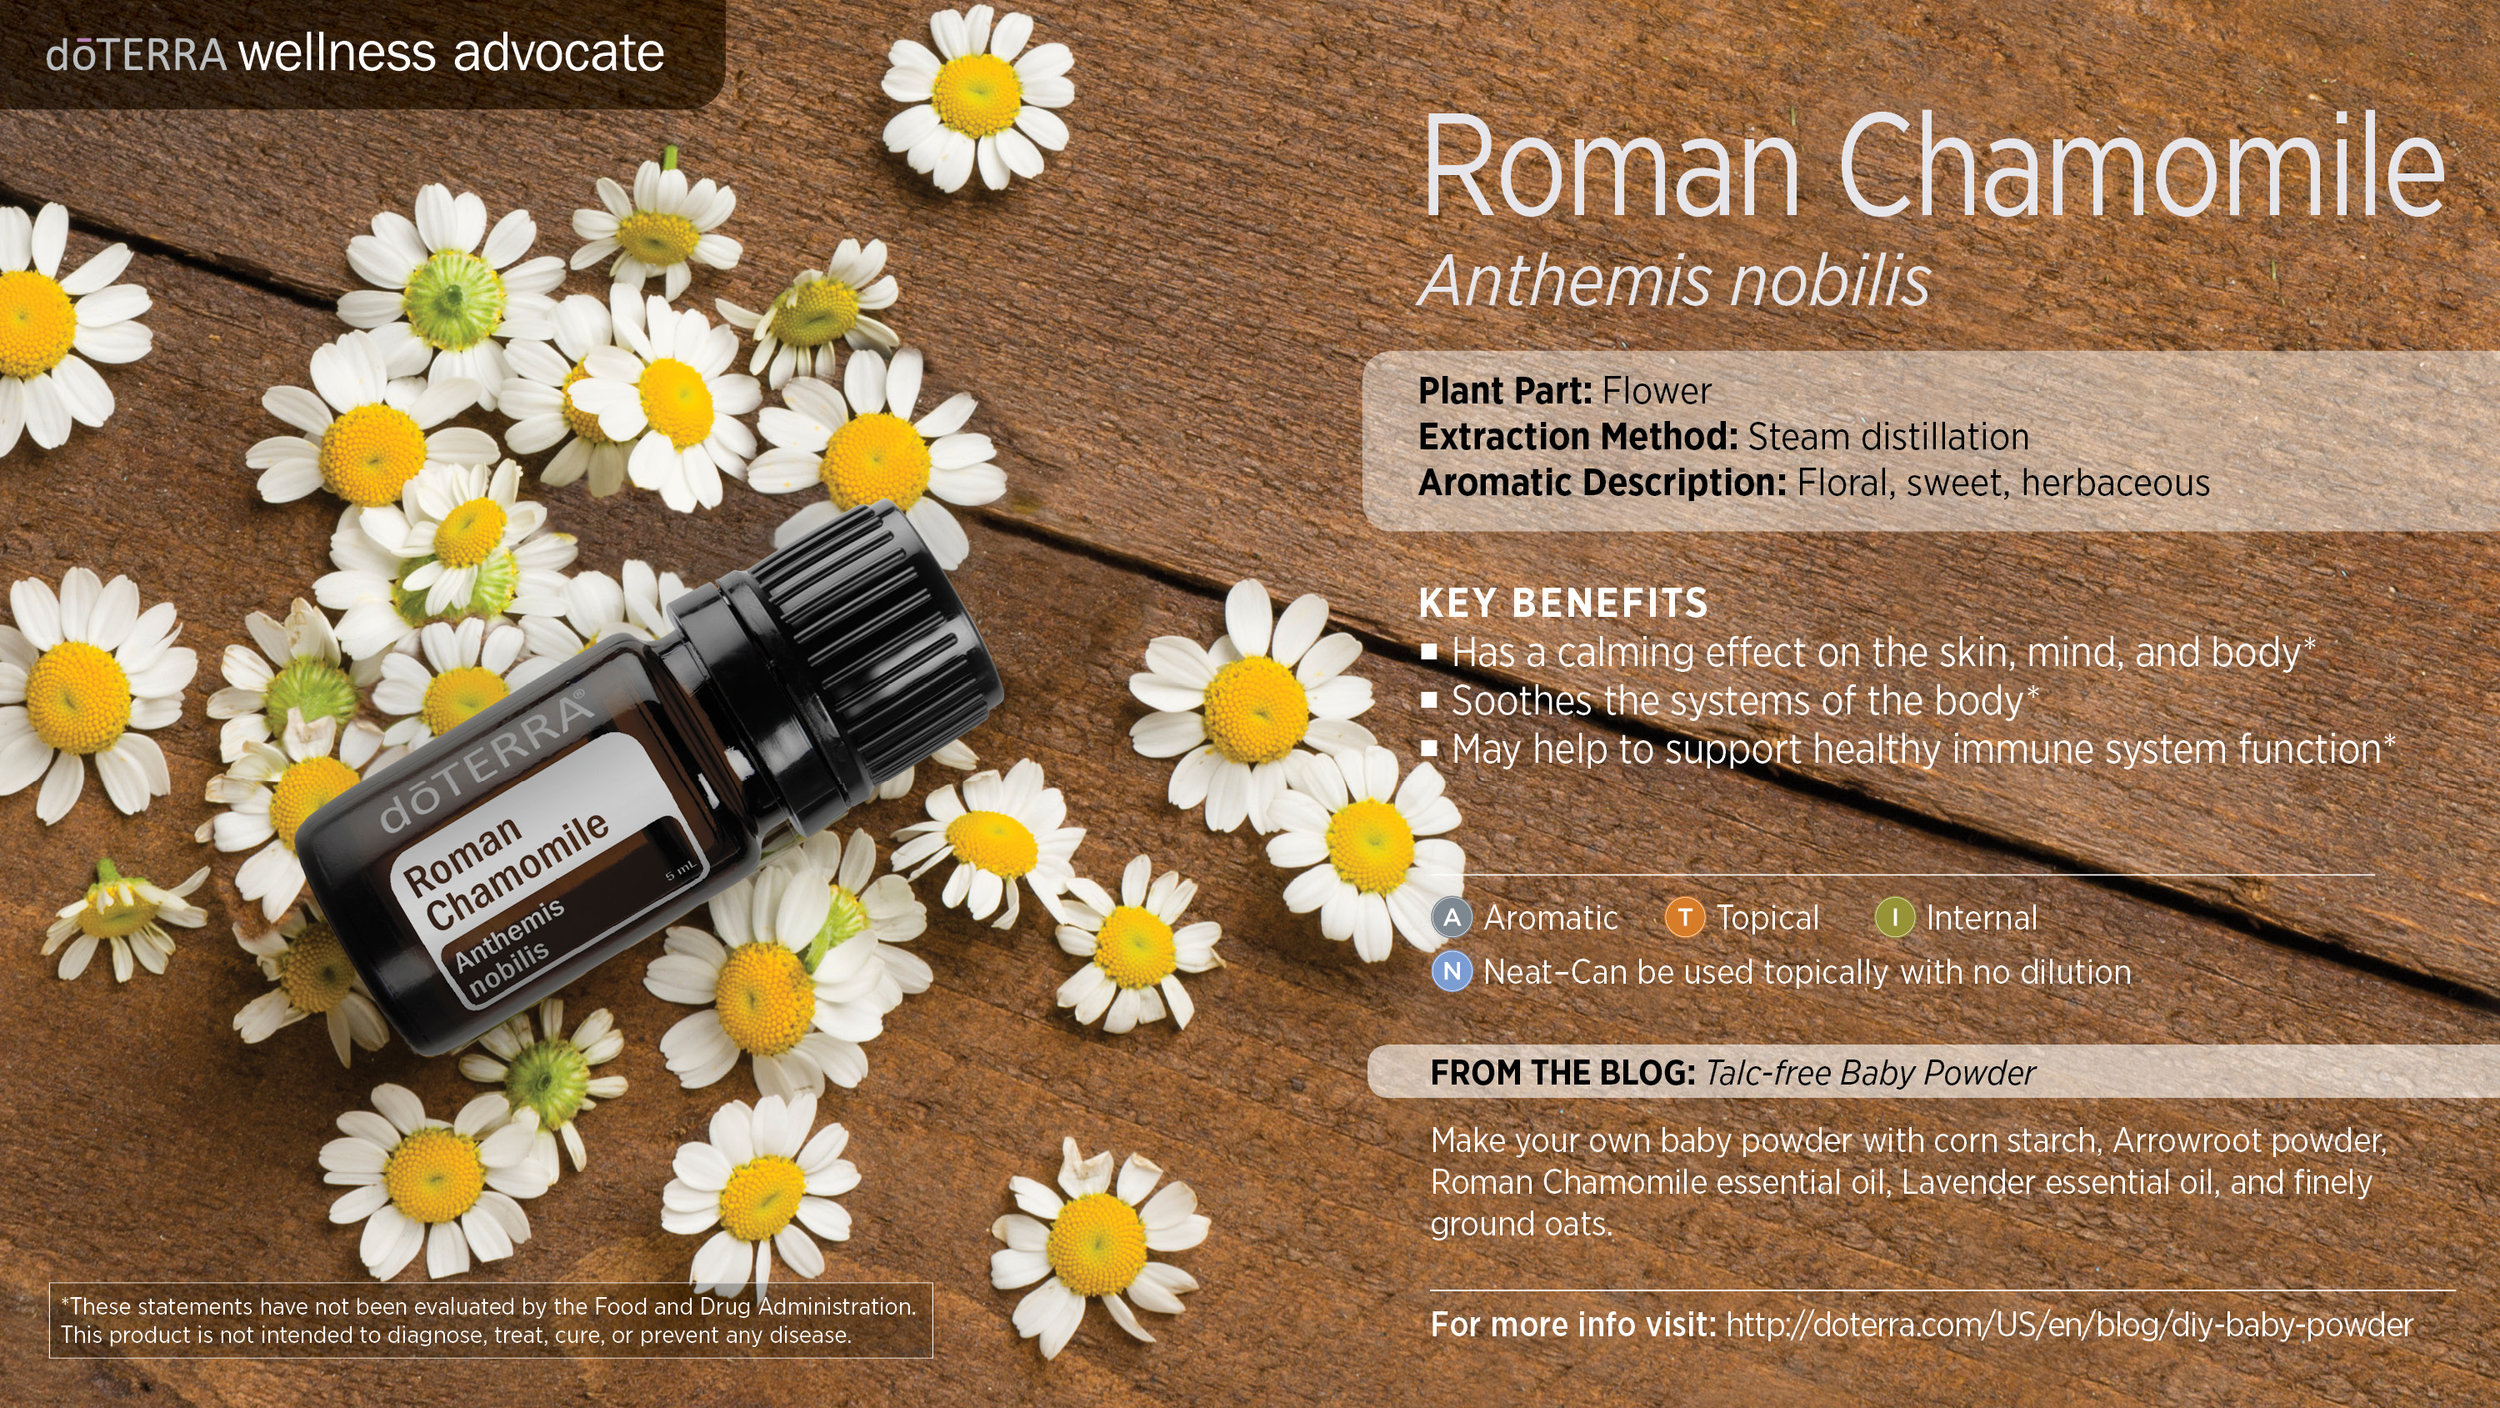 wa-roman-chamomile.jpg